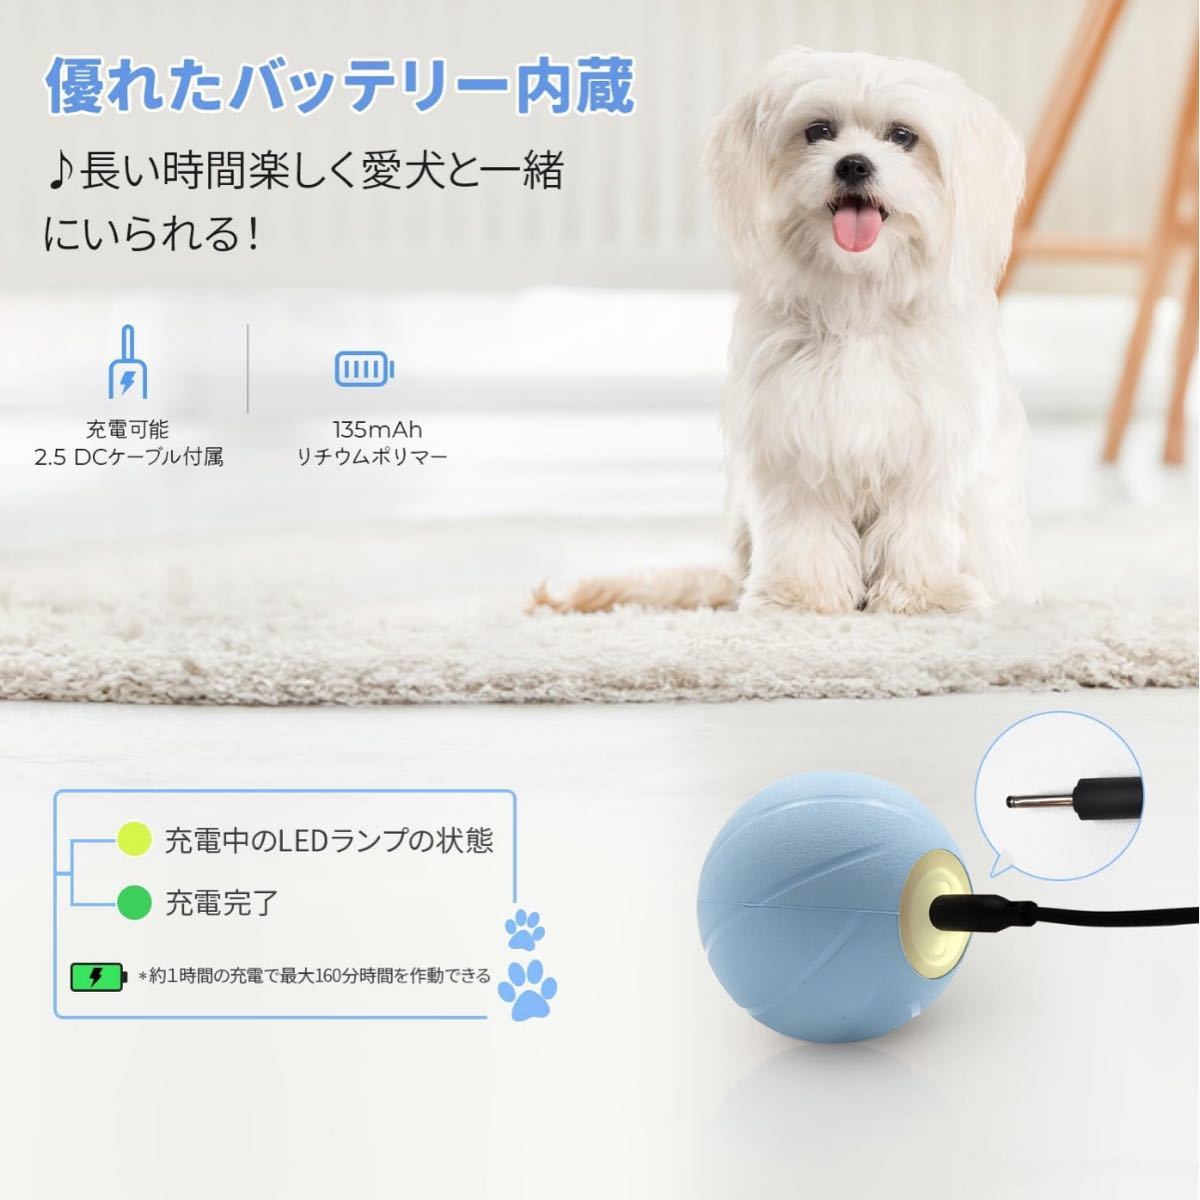 Cheerble собака мяч собака игрушка маленький размер собака собака игрушка автоматика движение + тряска + bound функция 3 режим выбор возможность натуральный резиновый 